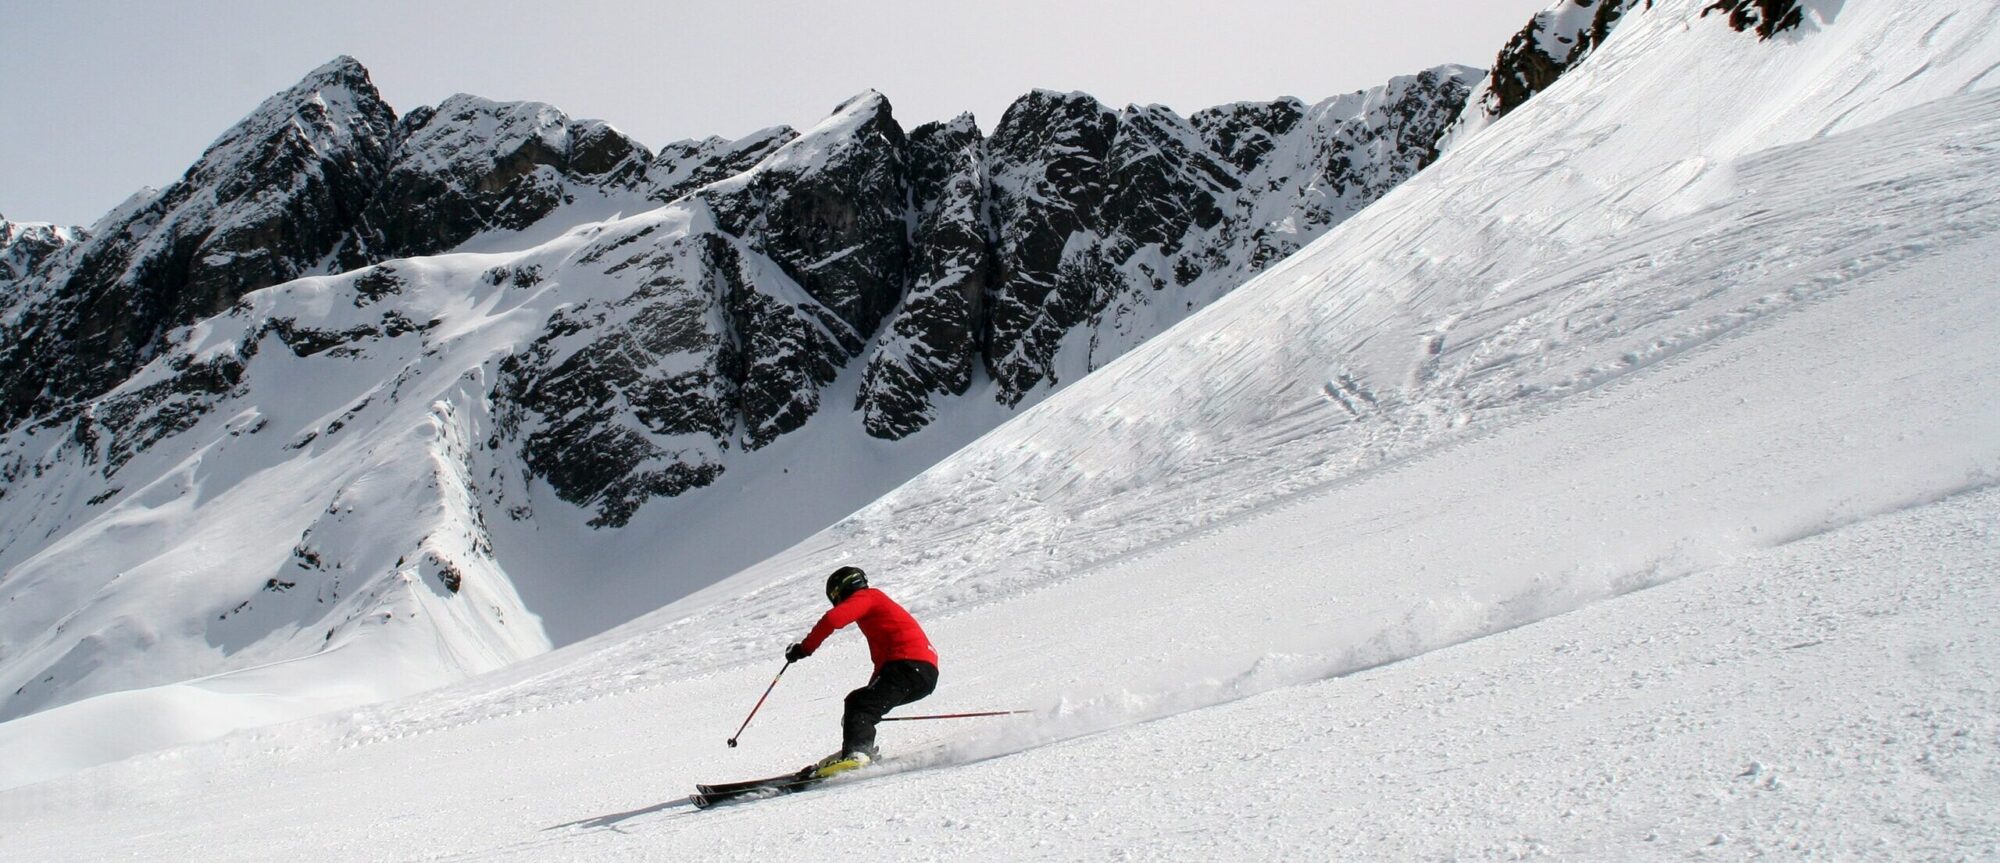 Skifahren in Tirol garantiert freie Fahrt abseits von Menschenmassen.